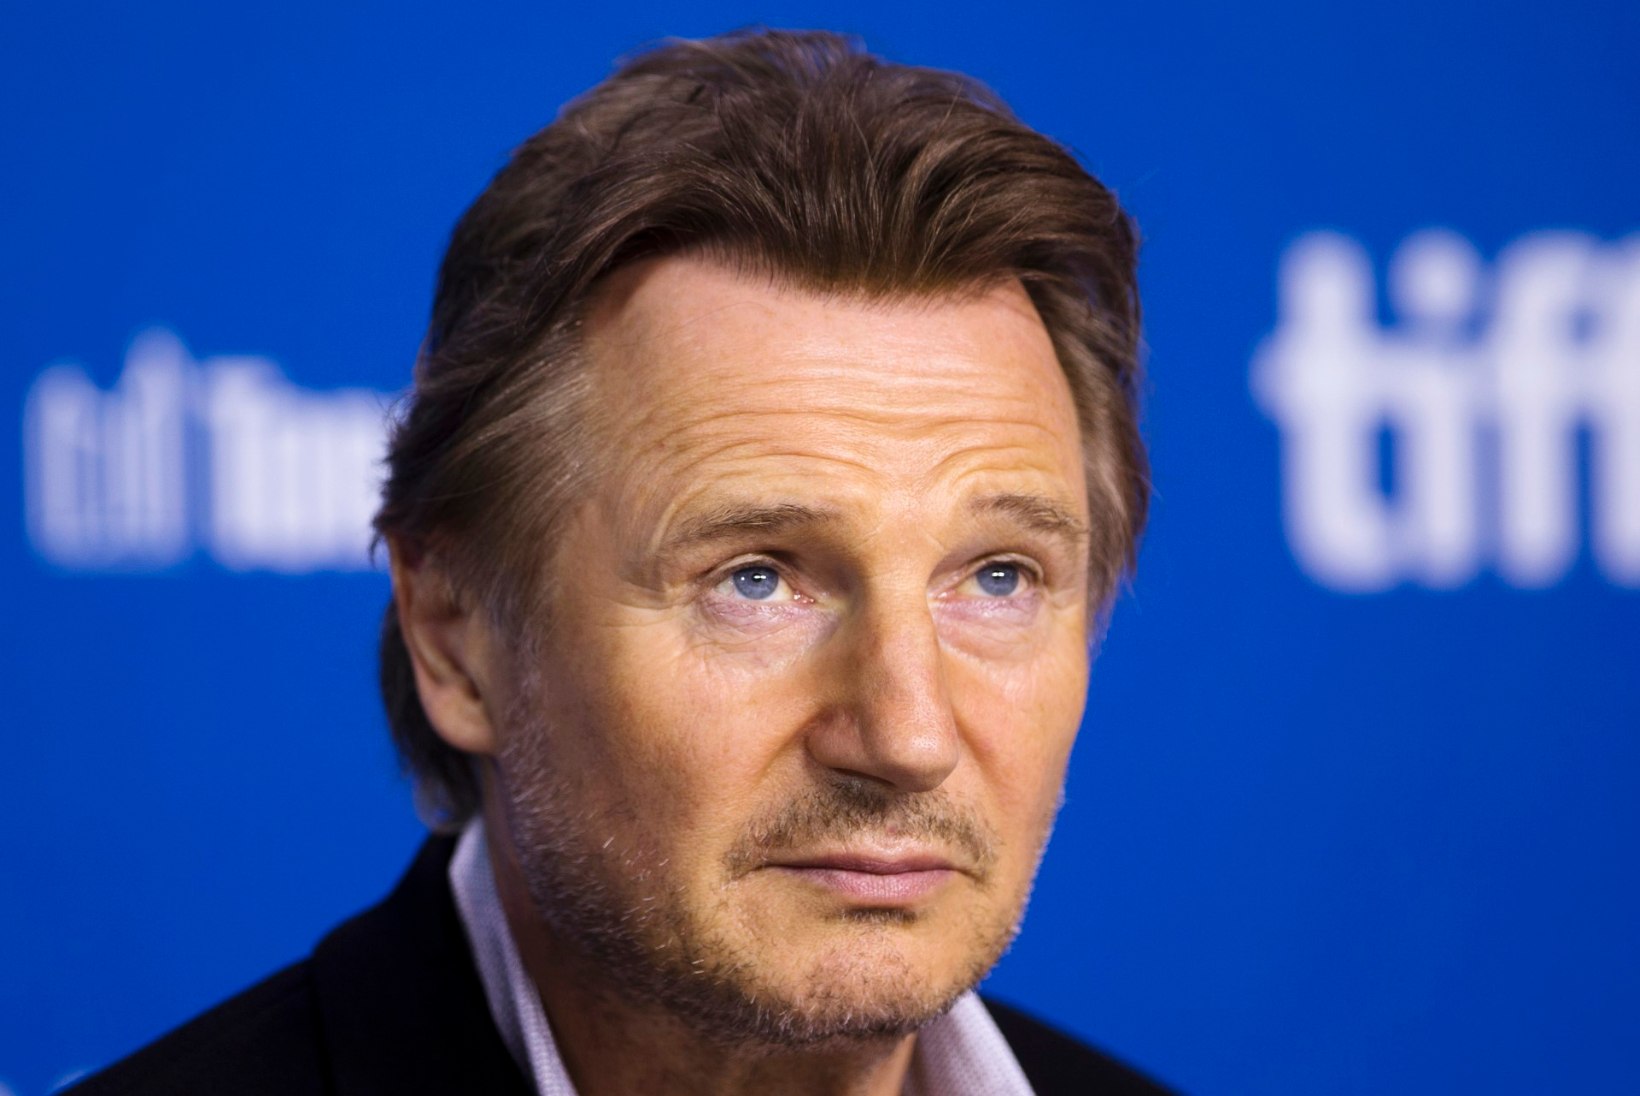 Seitse aastat lesk olnud Liam Neeson on taas armunud